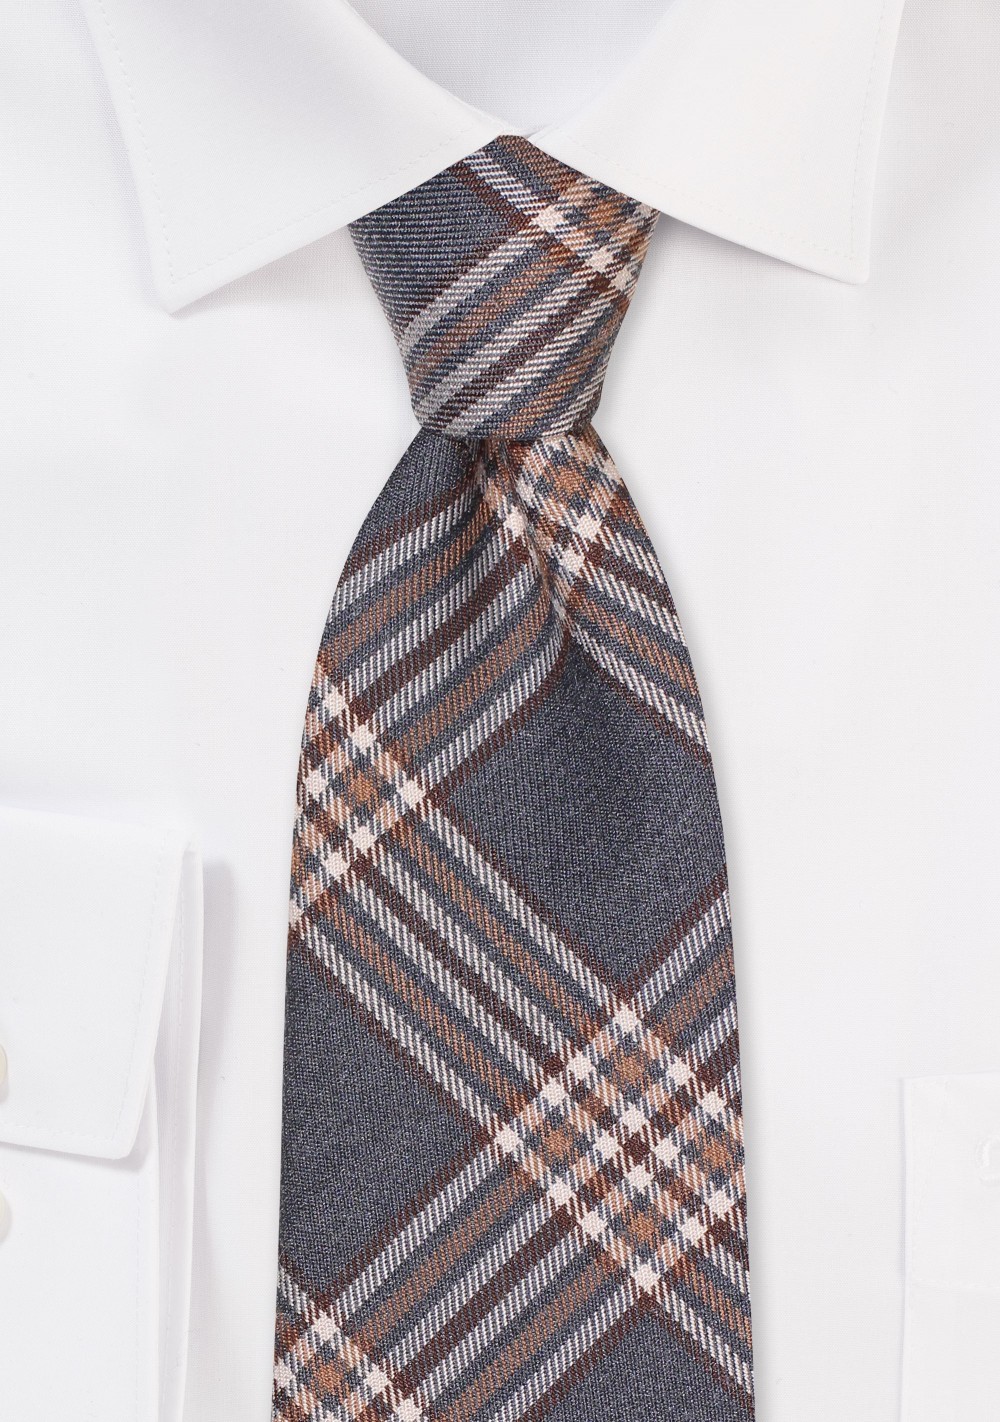 Elegant Plaid Tie in Grays